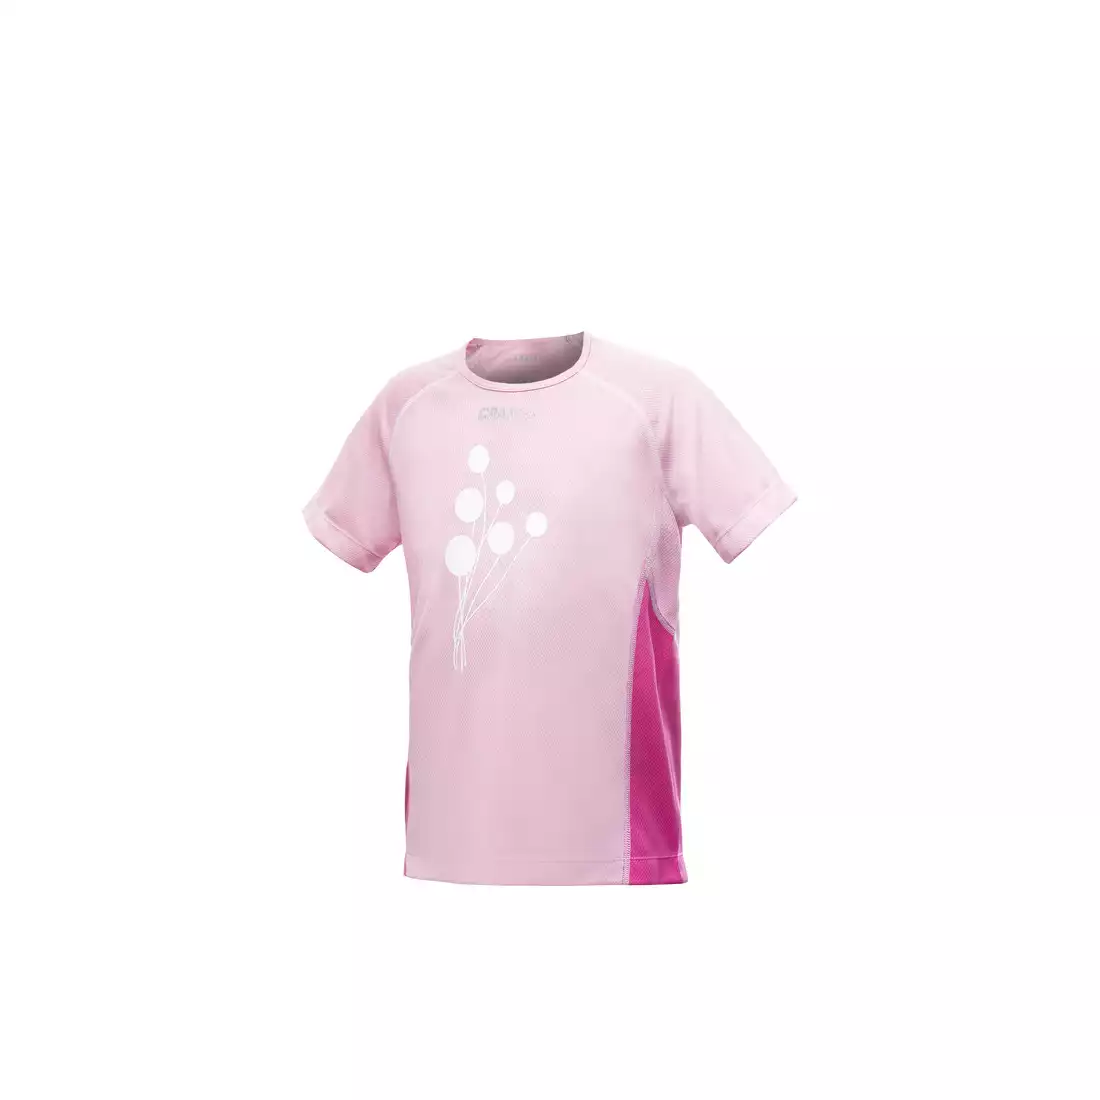 CRAFT ACTIVE - damska koszulka juniorska do biegania 1901357-2472